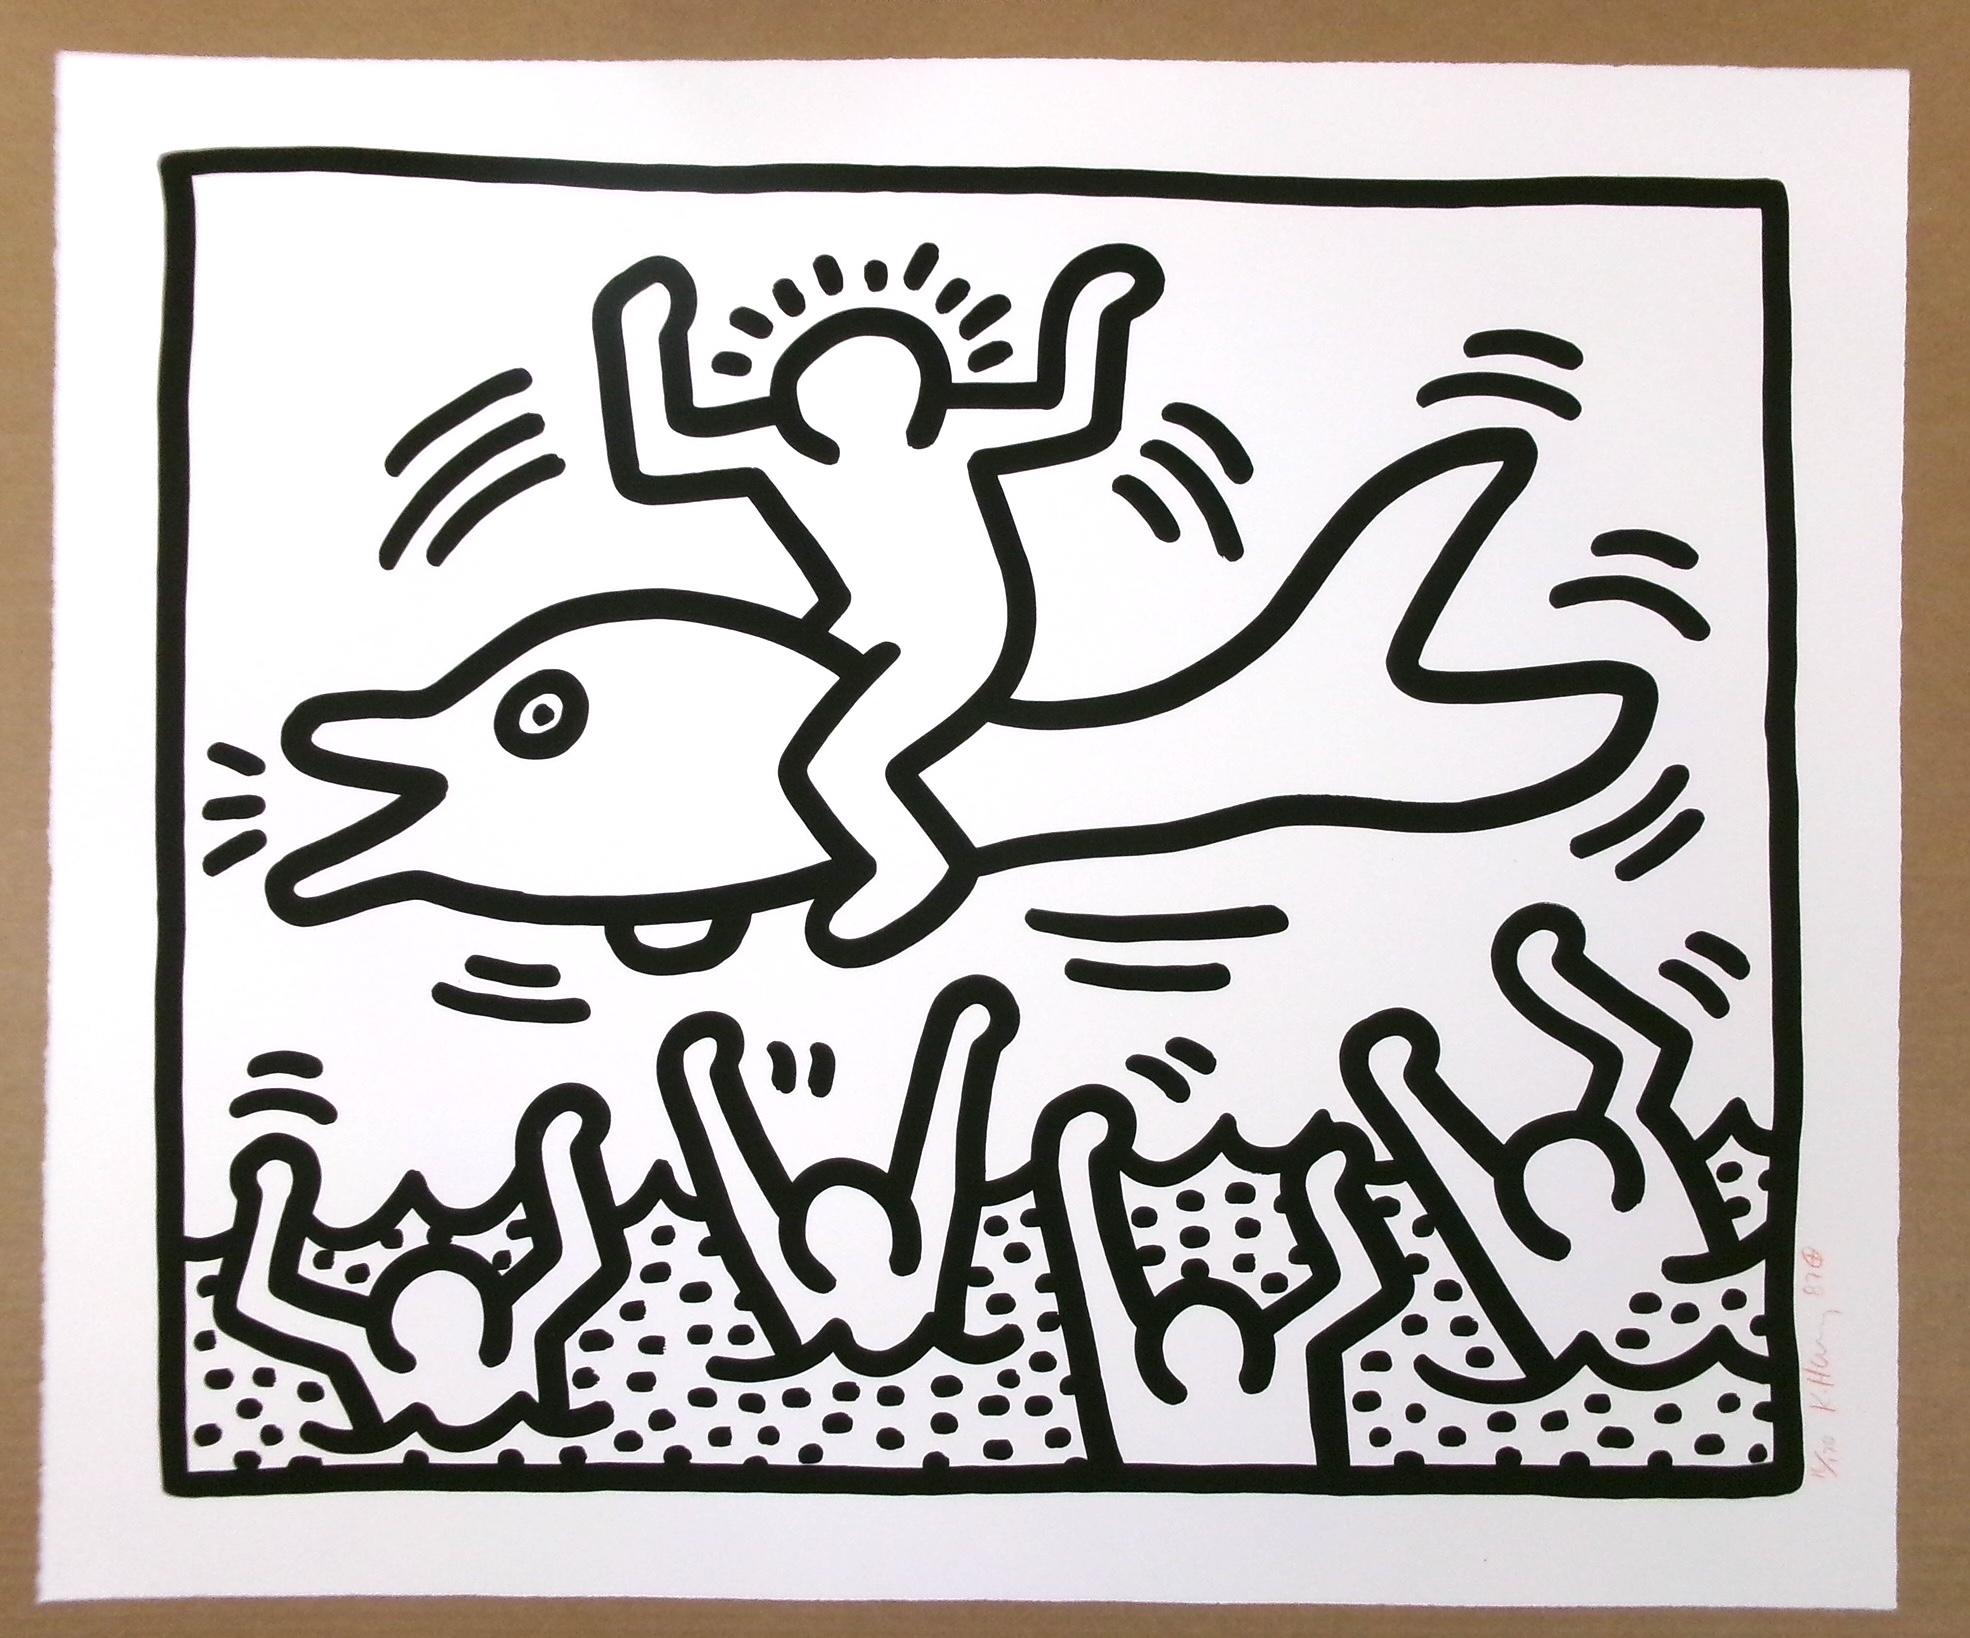 Sin título - Print de Keith Haring